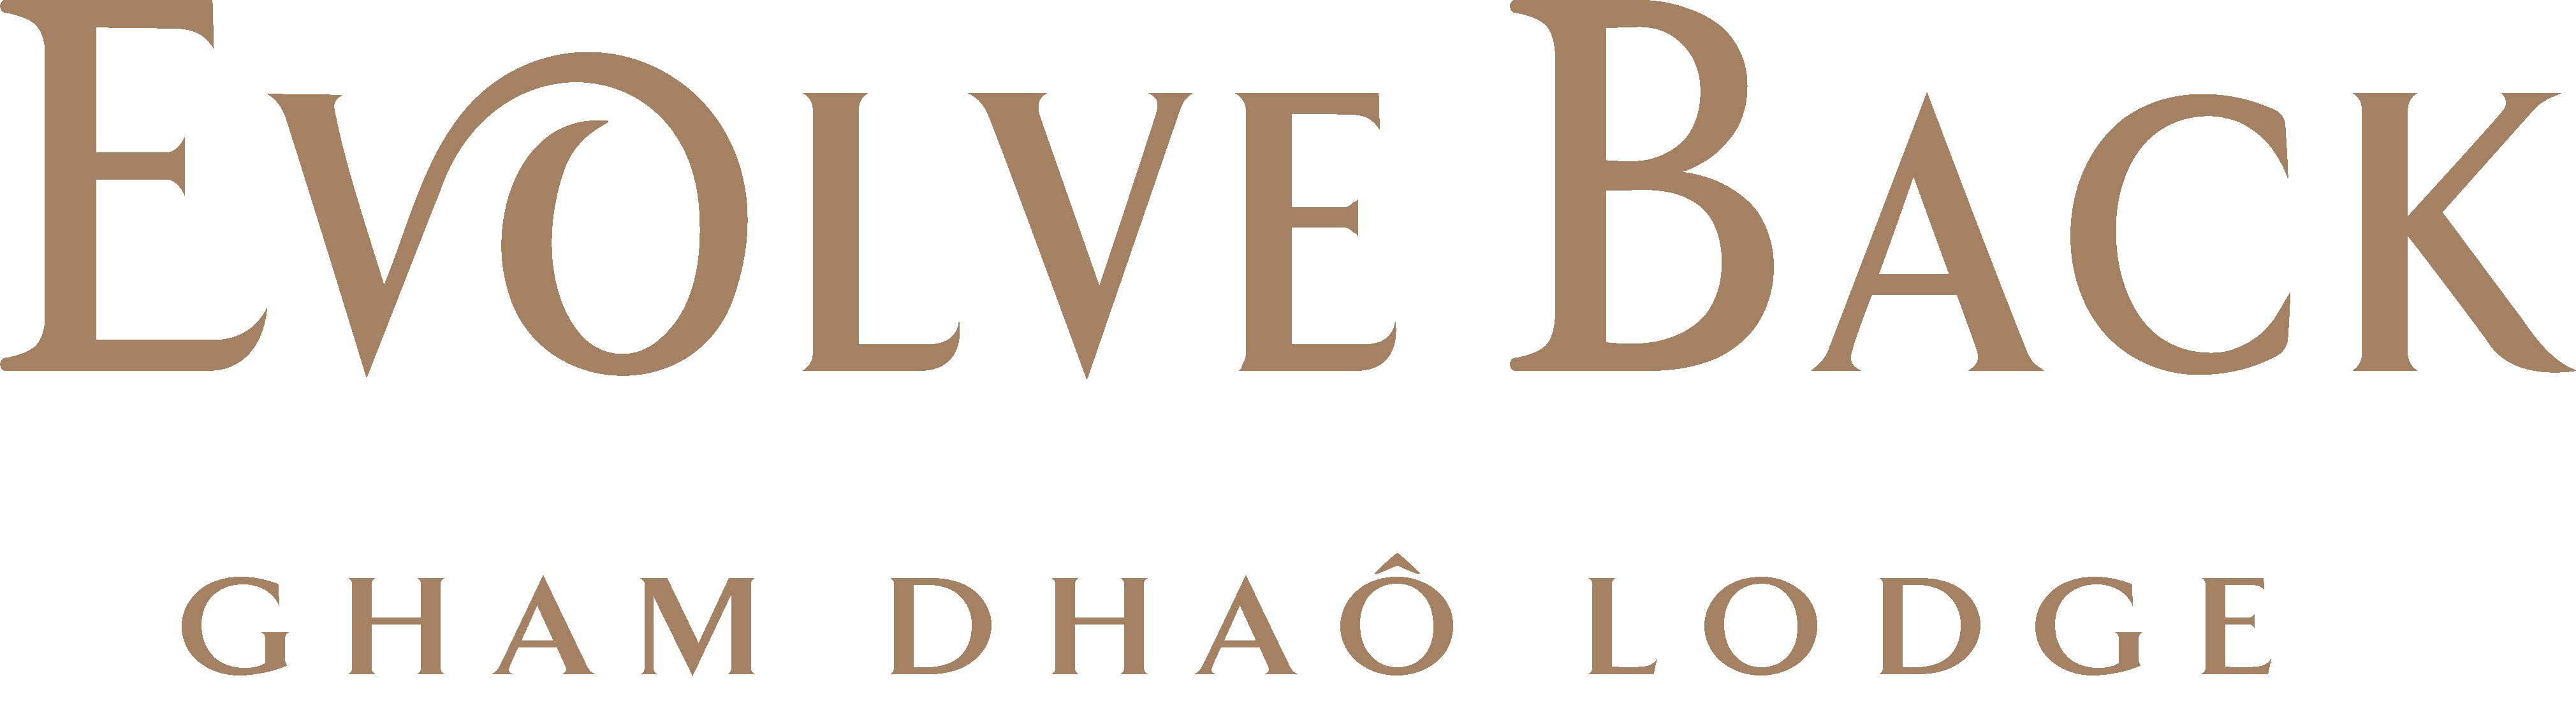 Evolve Back Kalahari Logo